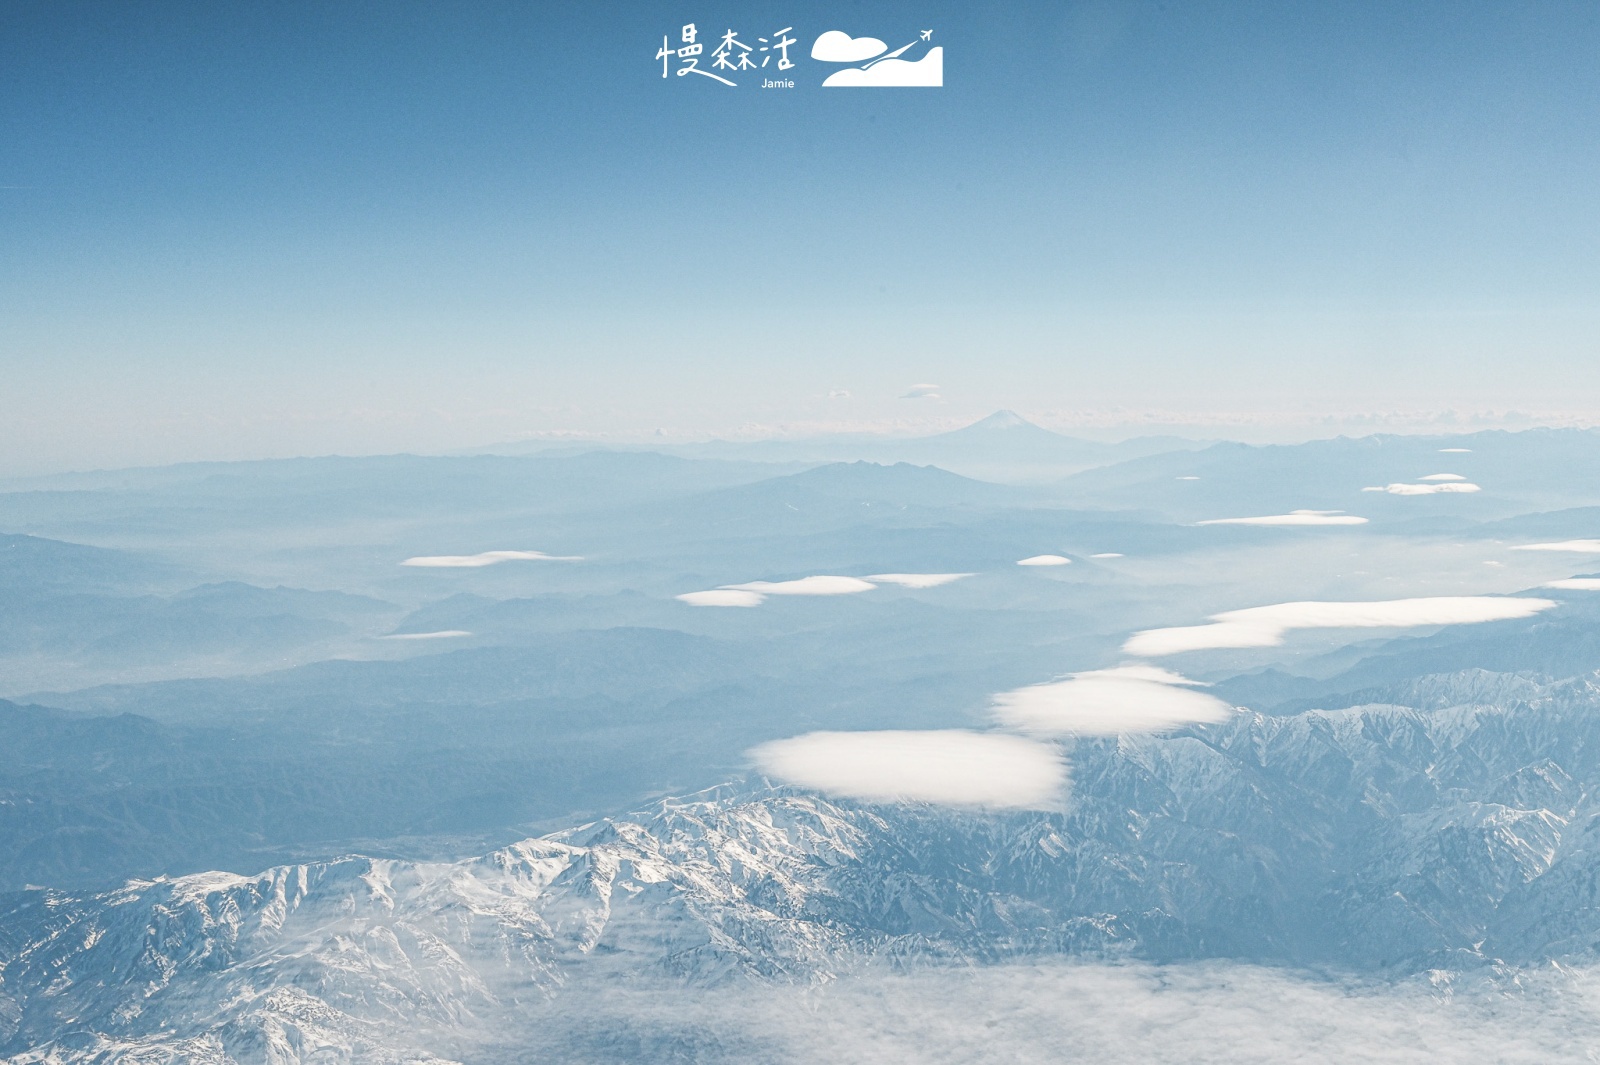 搭乘台灣虎航Tigerair Taiwan 瀏覽日本上空富士山美景